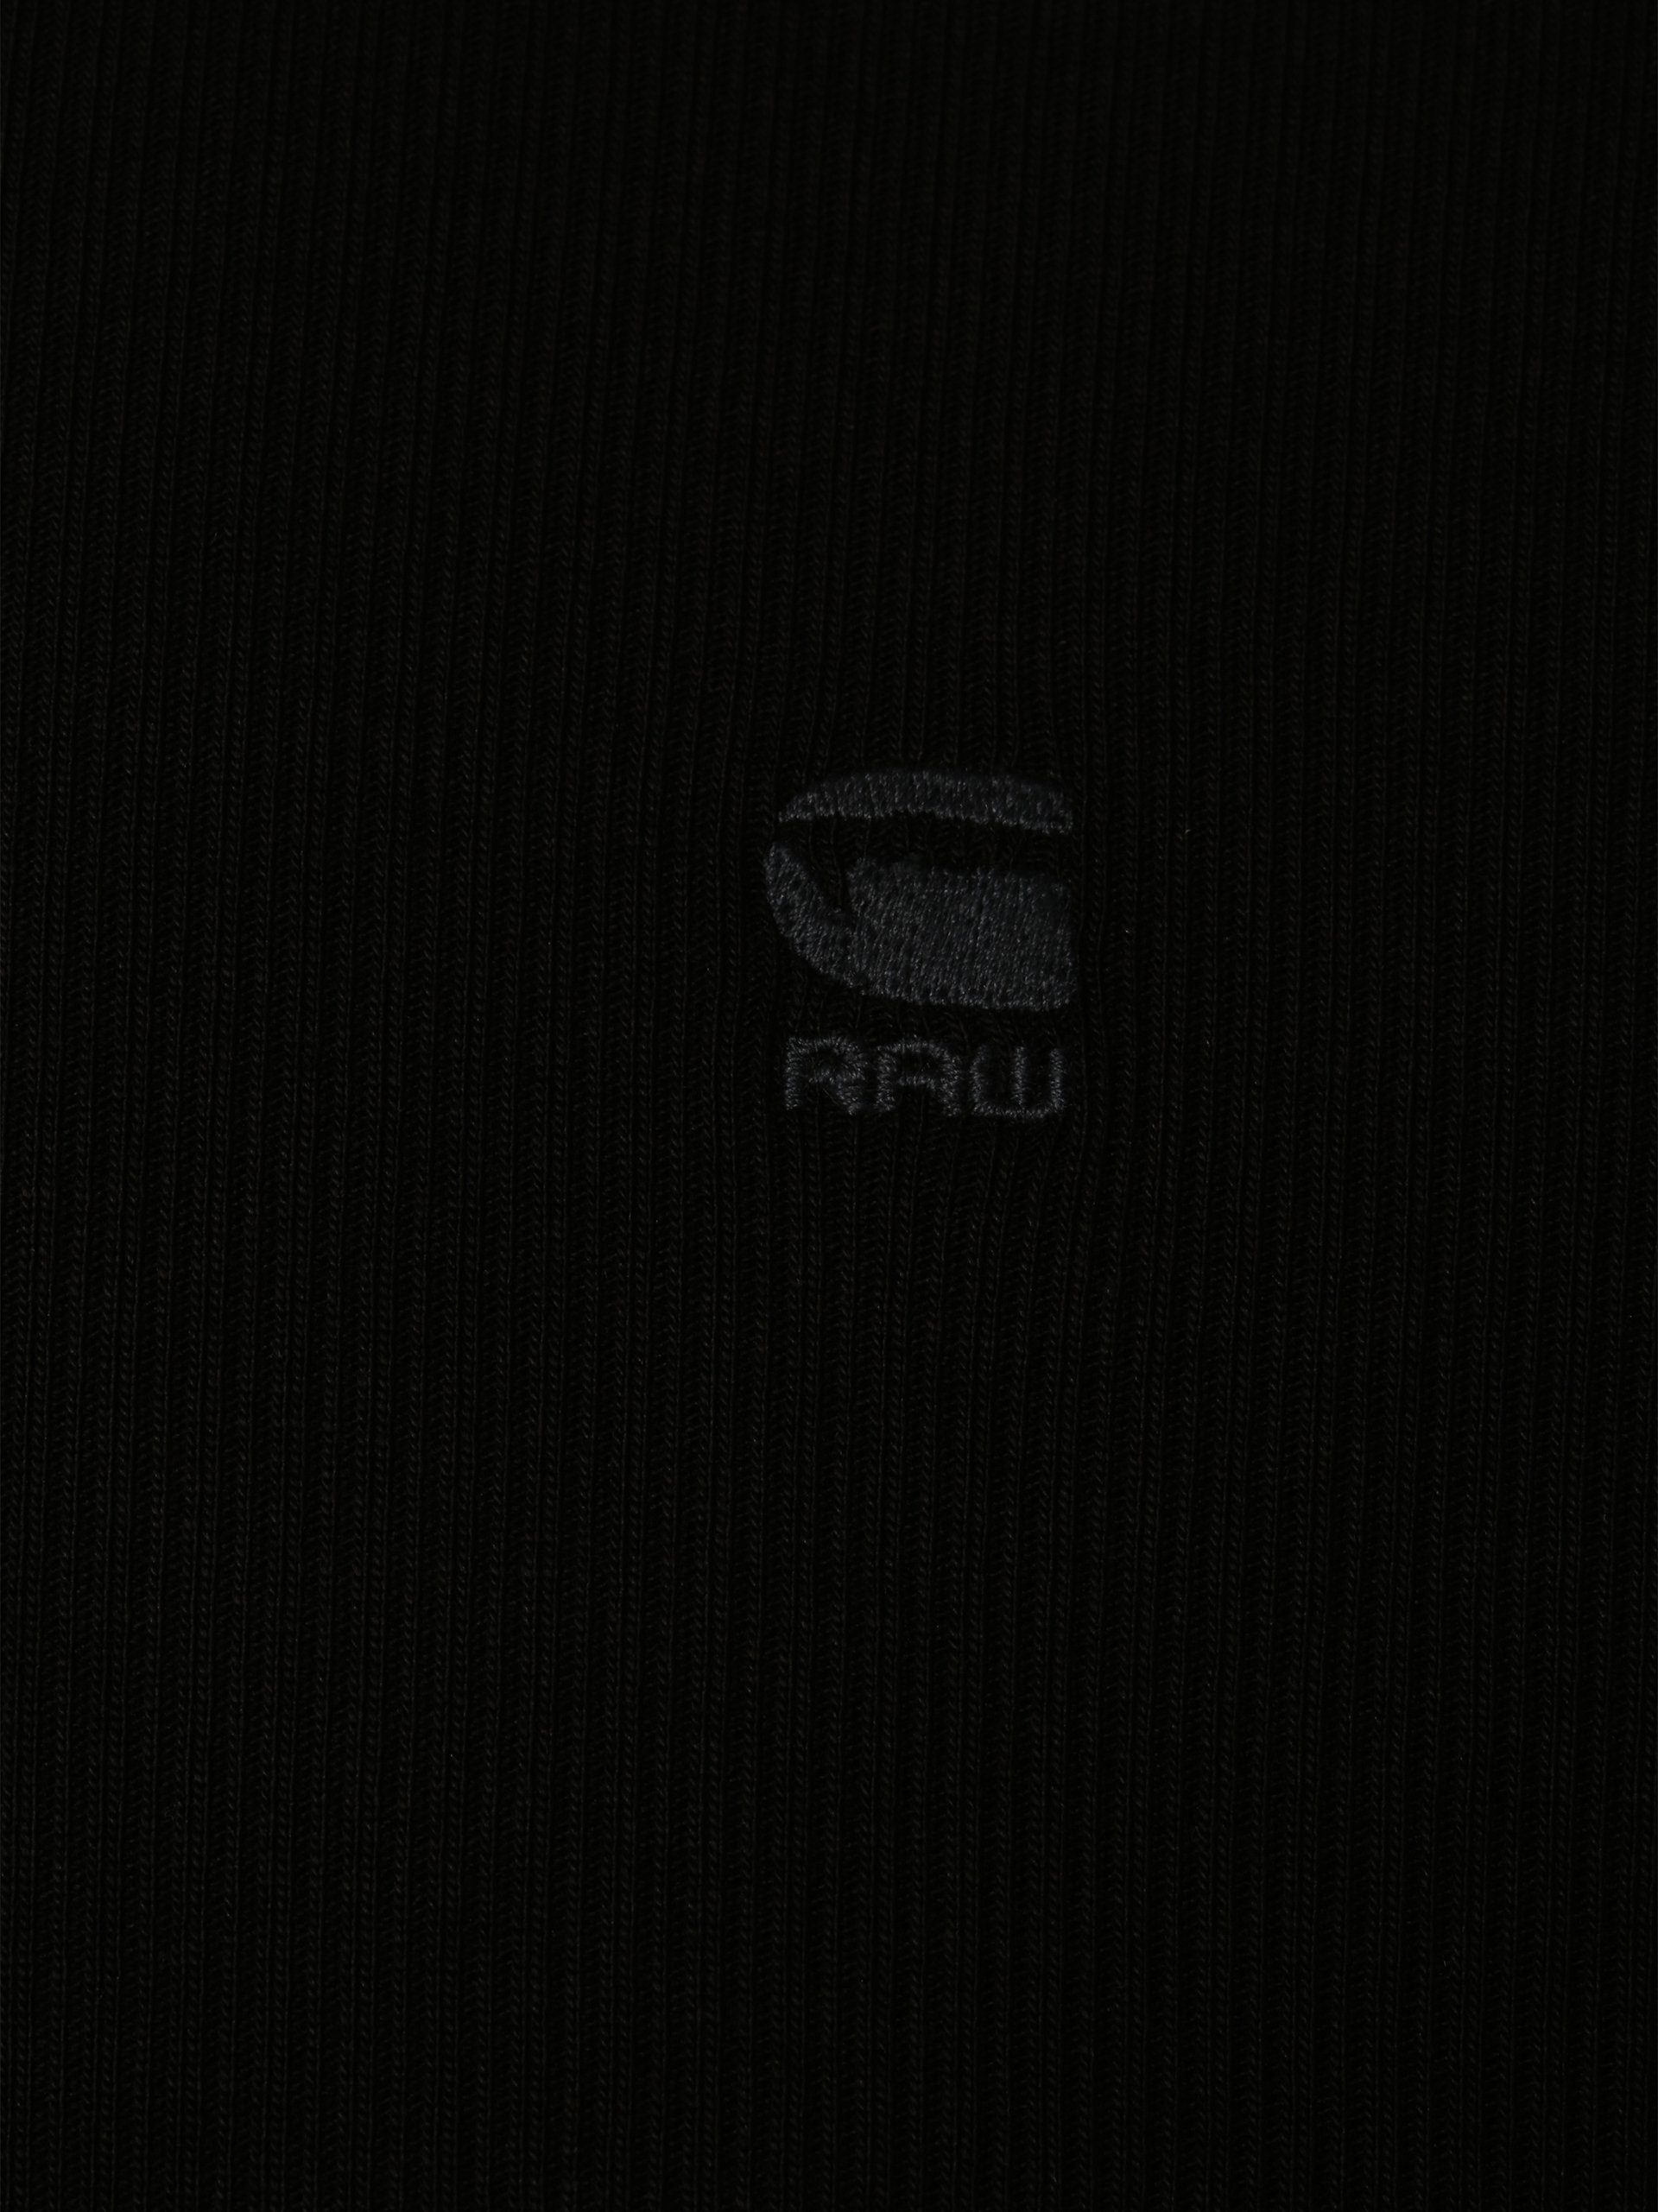 G-Star RAW T-Shirt Lash schwarz